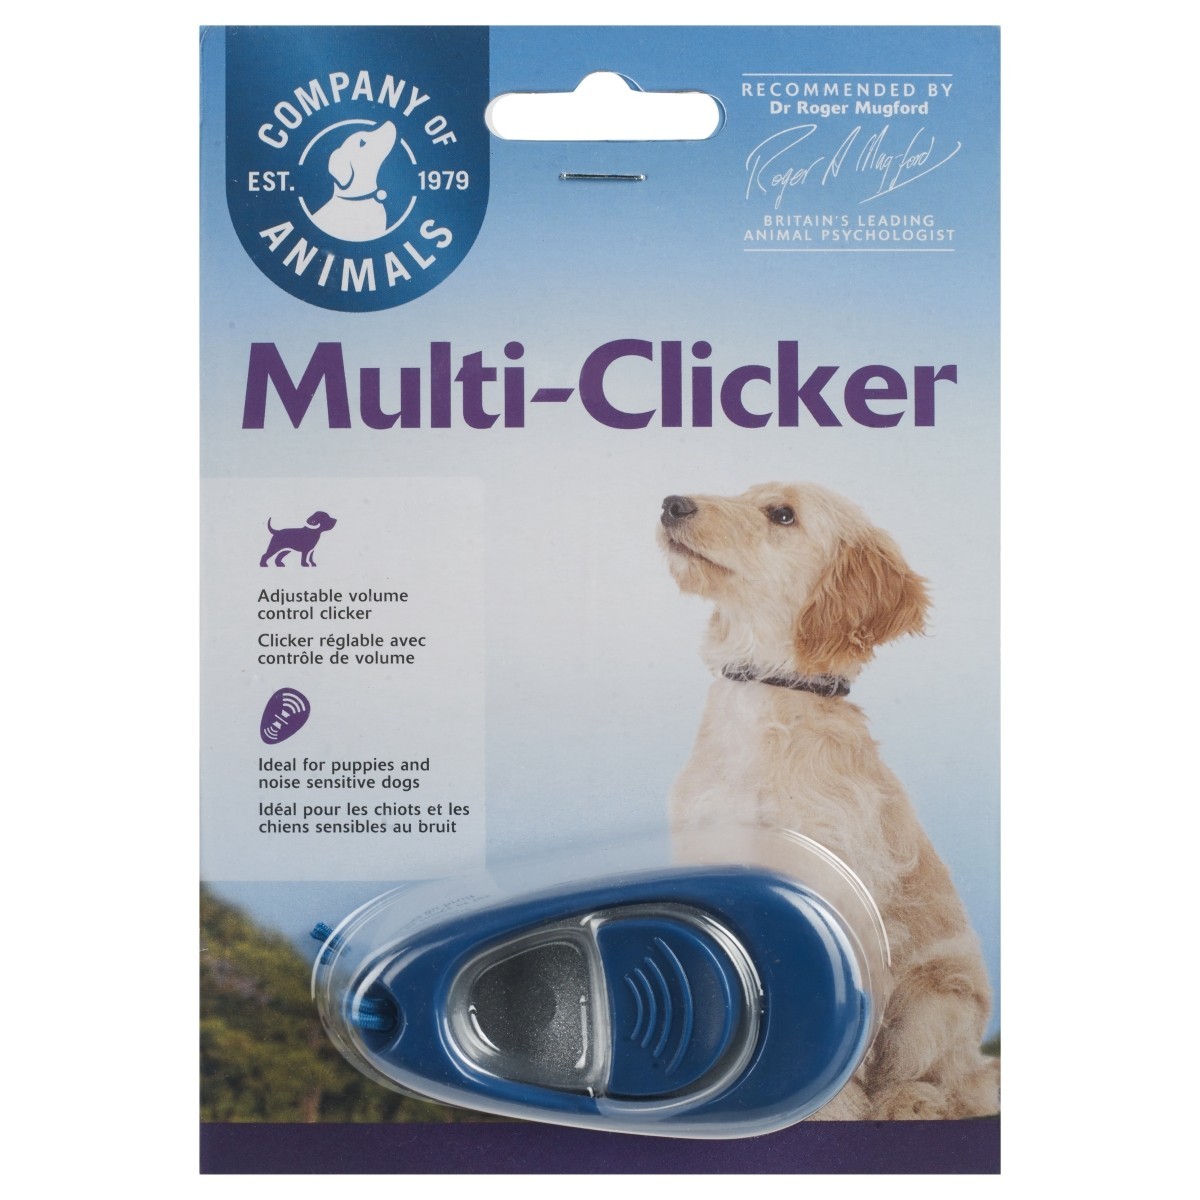 dog clicker sound